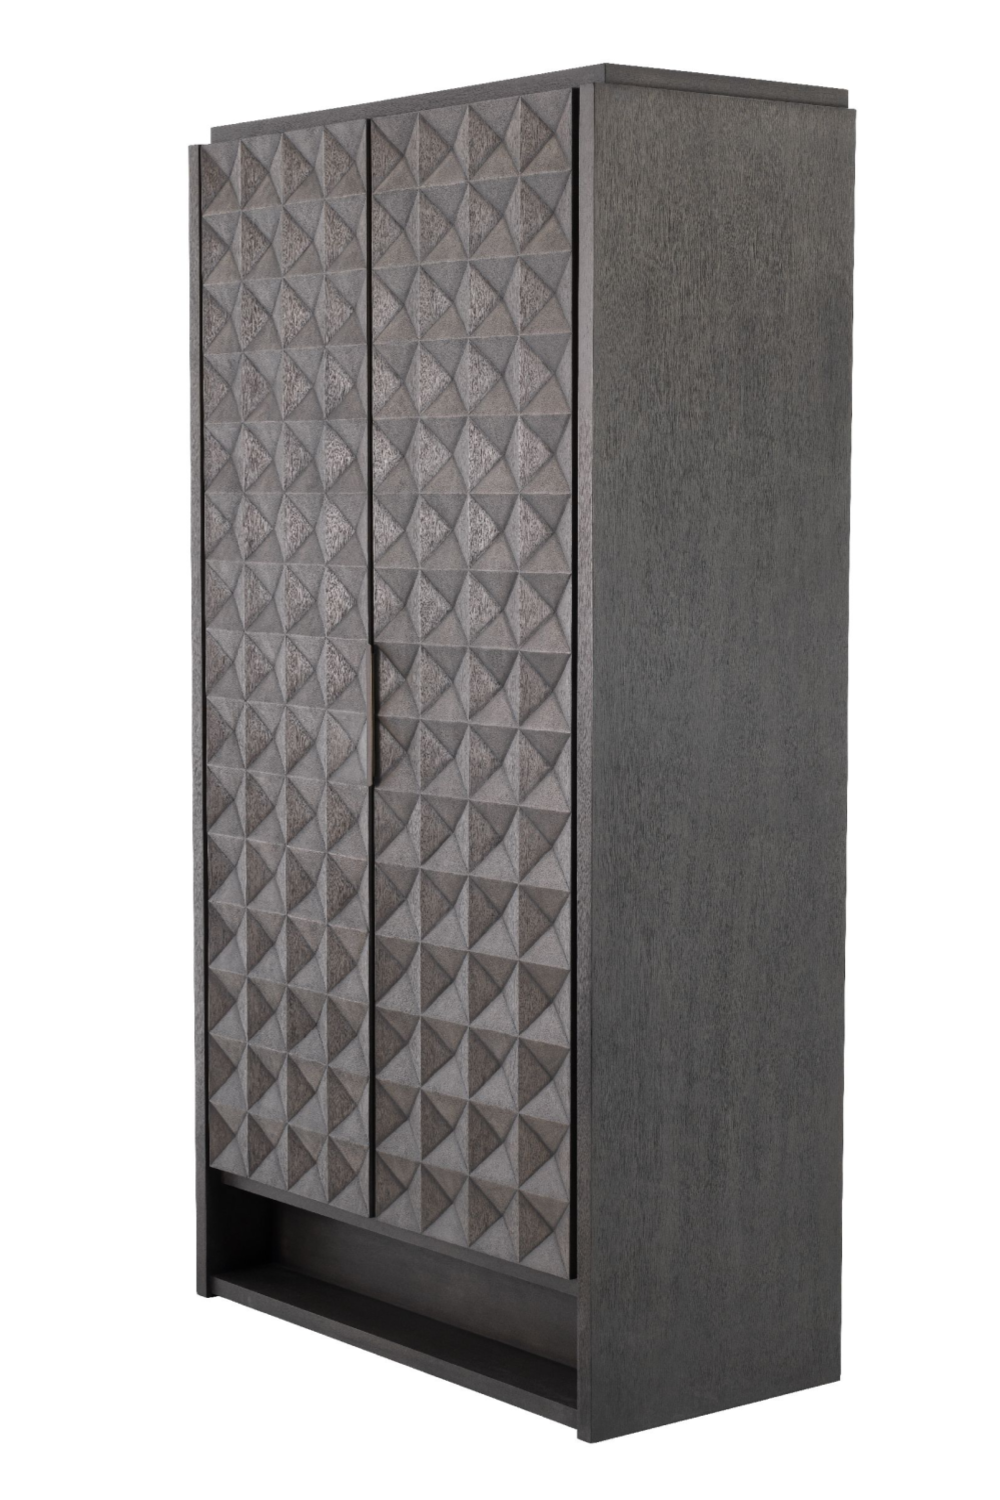 2-Door Meranti Wood Cabinet | Eichholtz Jane | #1 Eichholtz Retailer  